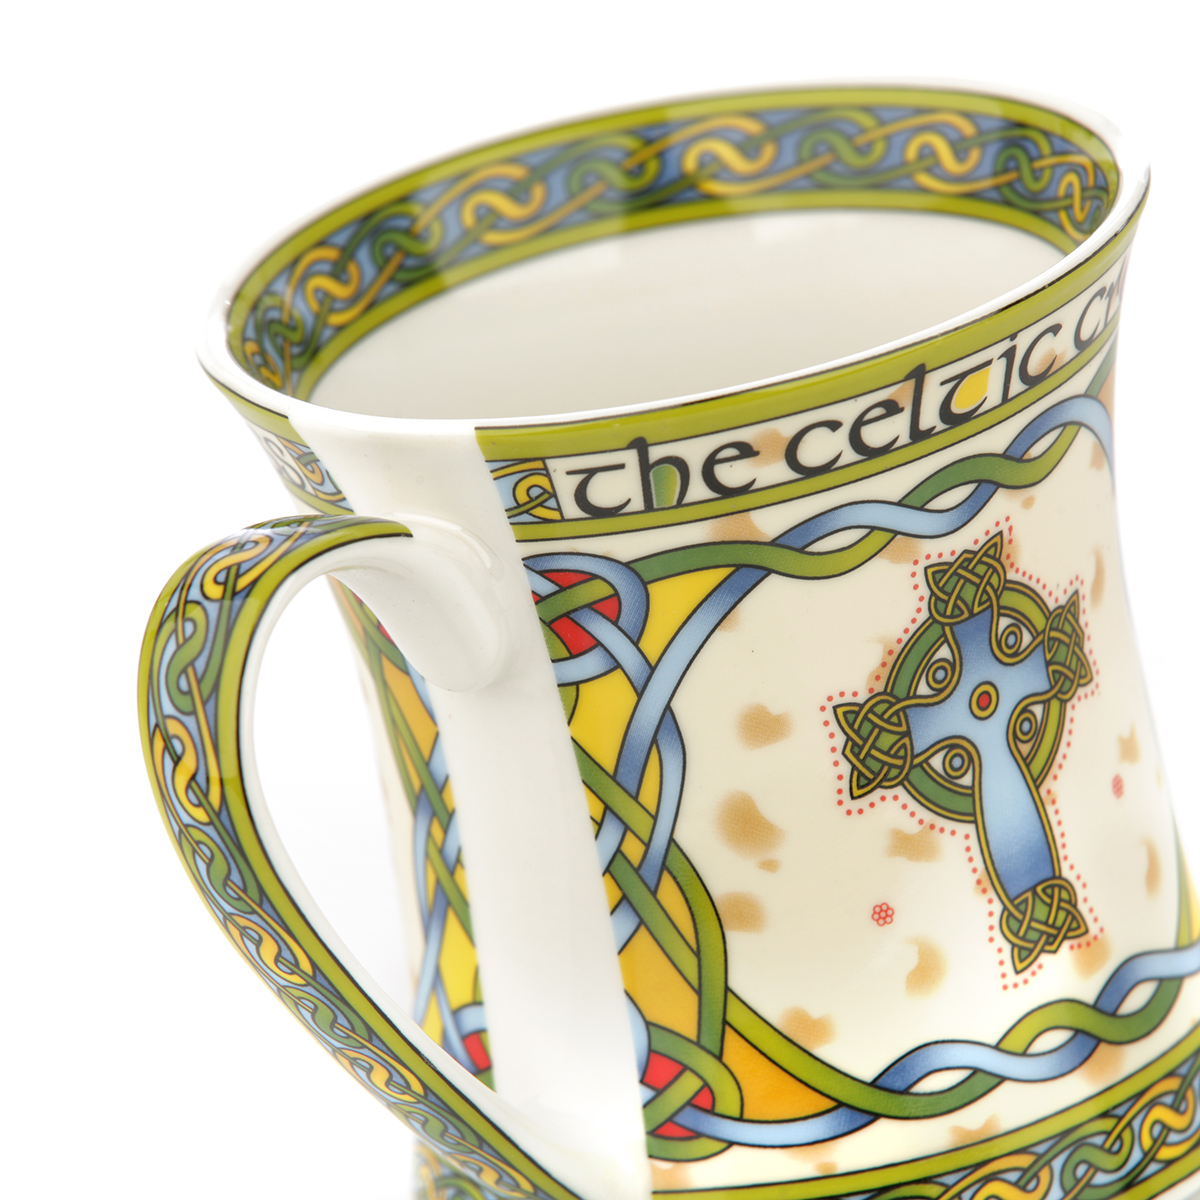 Celtic High Cross Mug - Kaffeebecher aus Irland mit keltischen Ornamenten